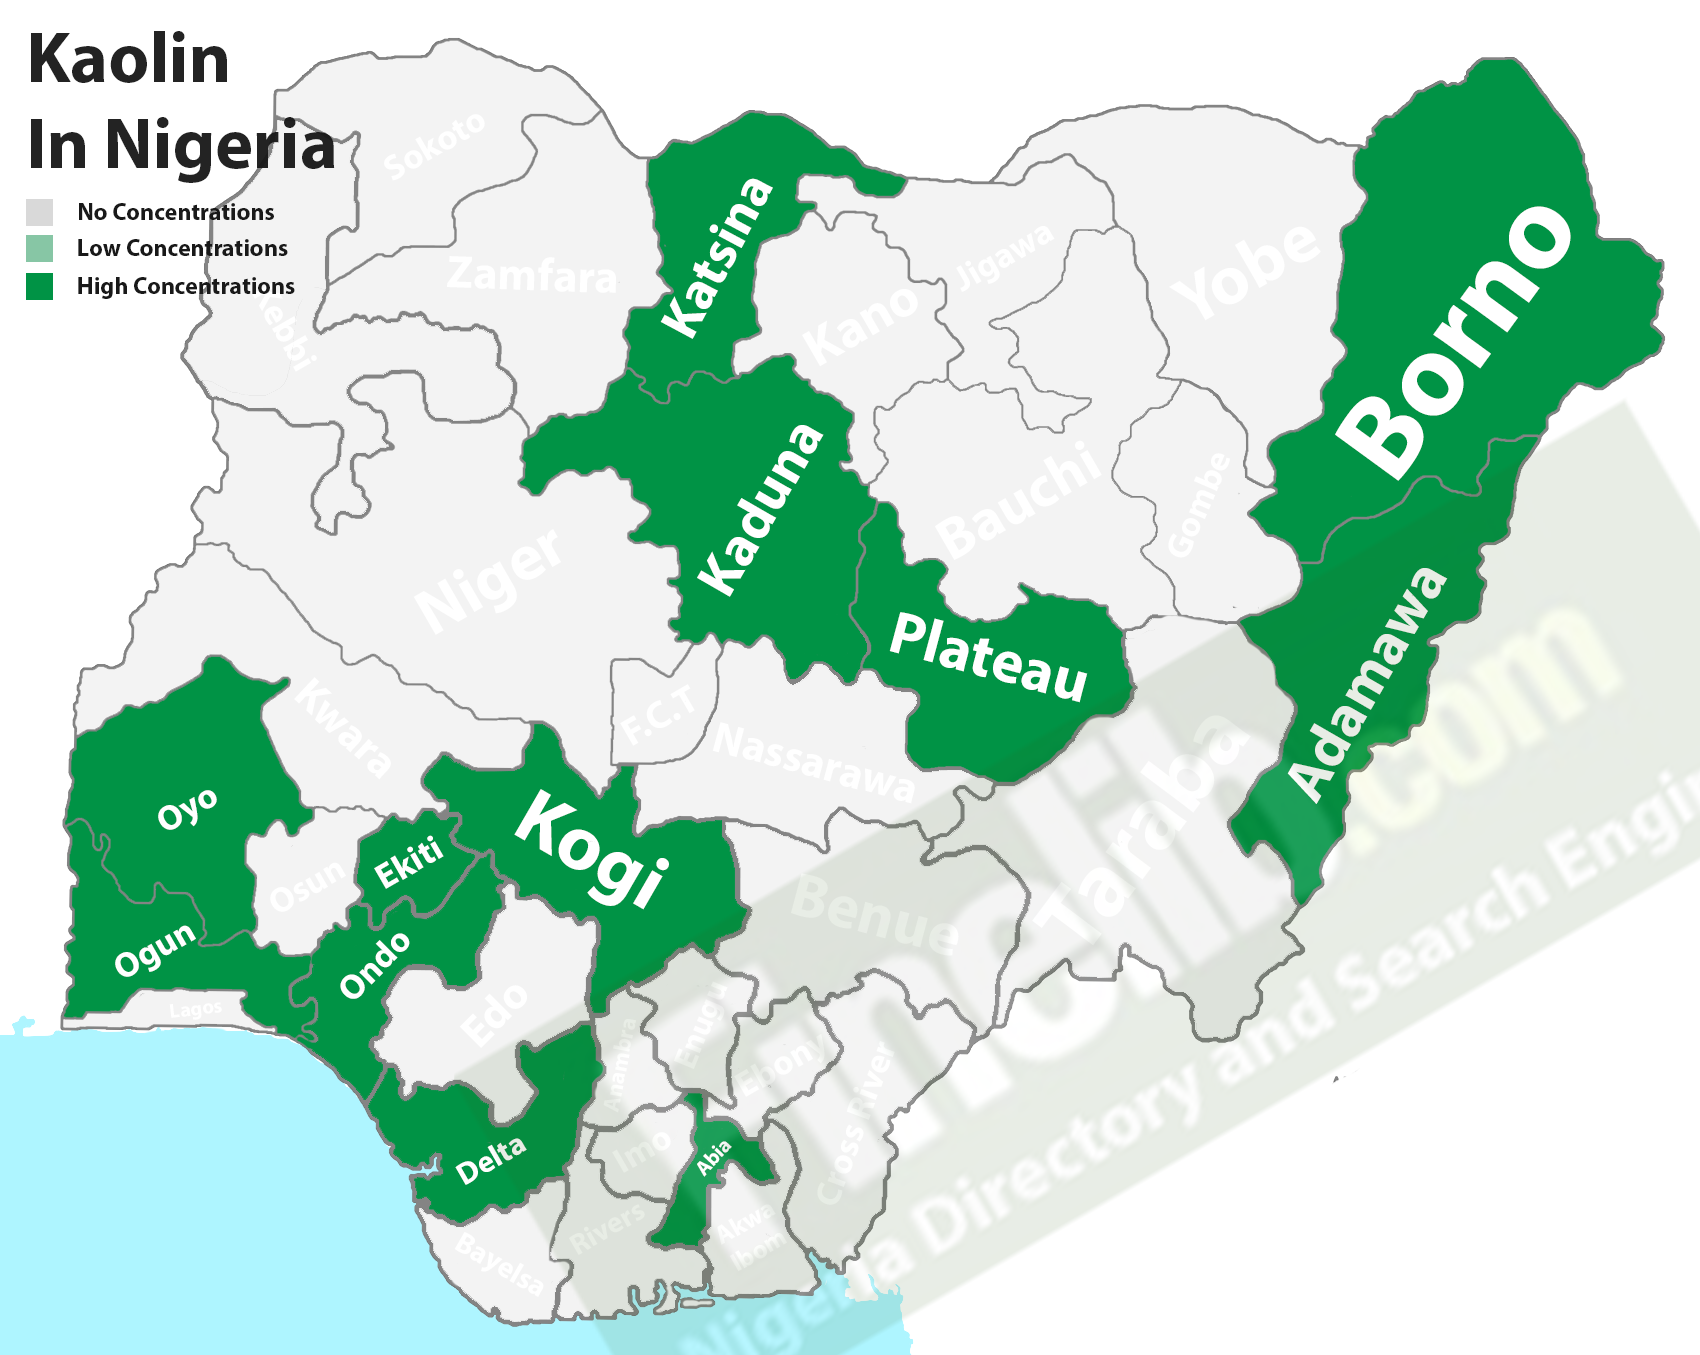 Kaolin mineral deposits in Nigeria